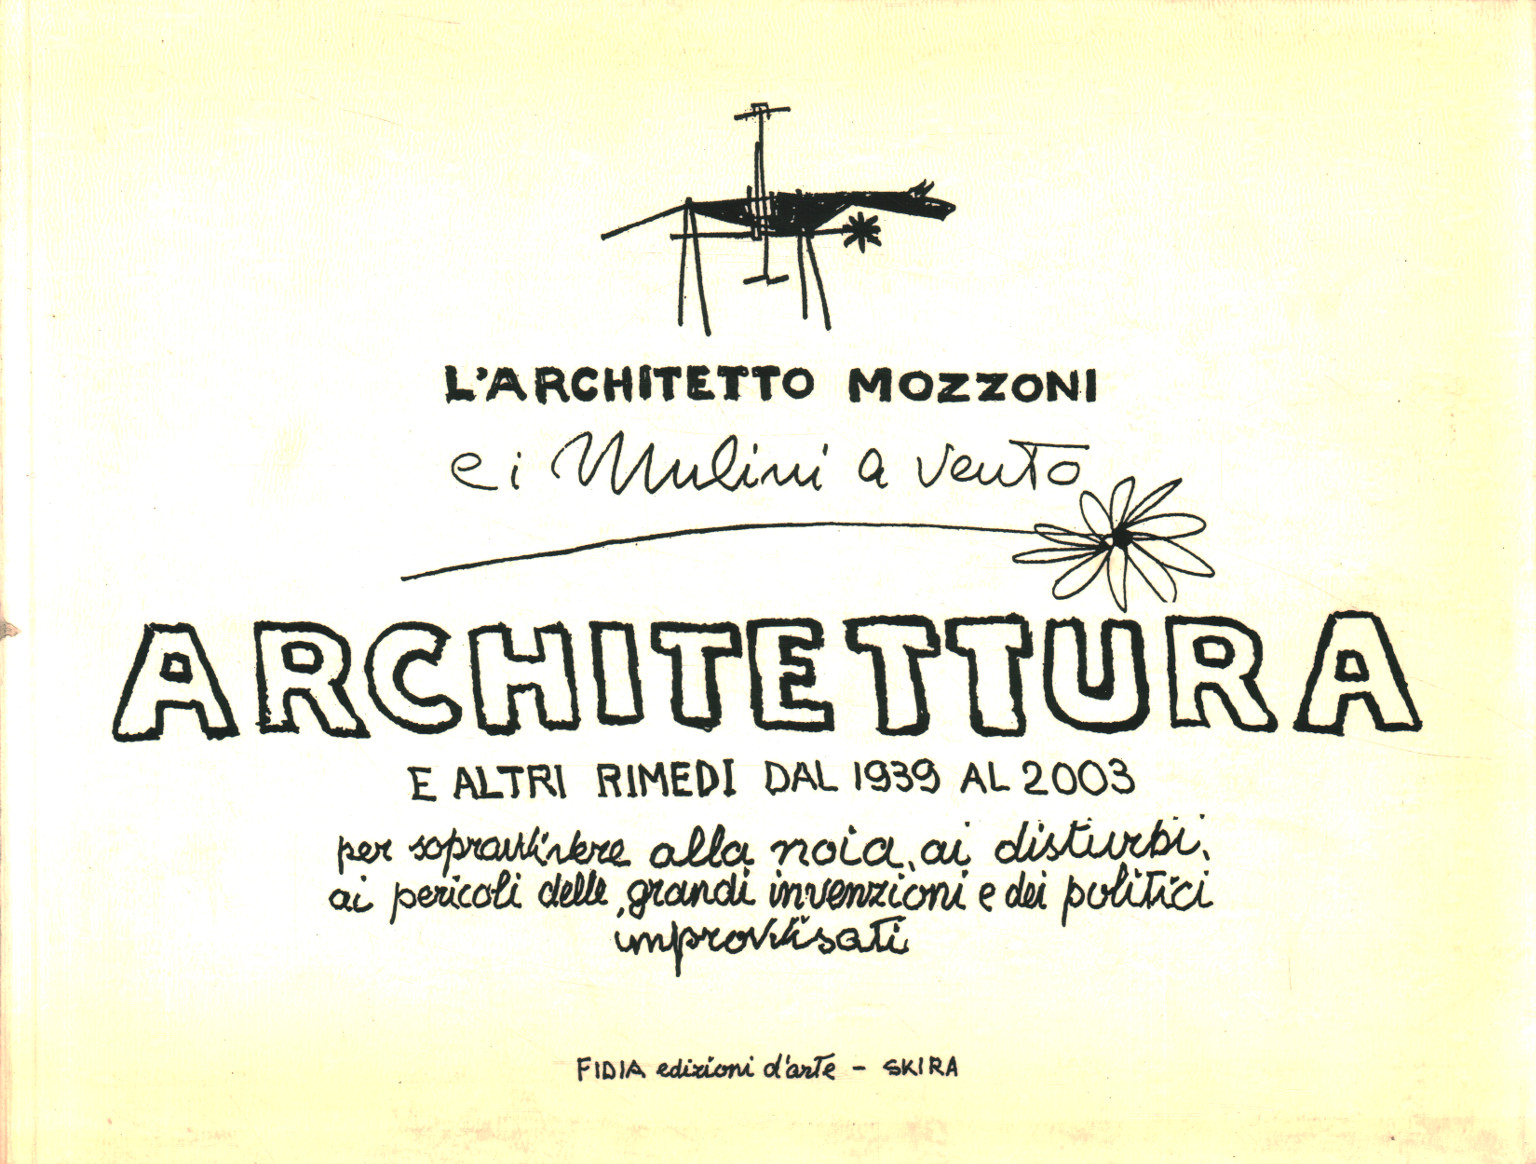 Libros - Arte - Arquitectura, El Arquitecto Mozzoni y los molinos